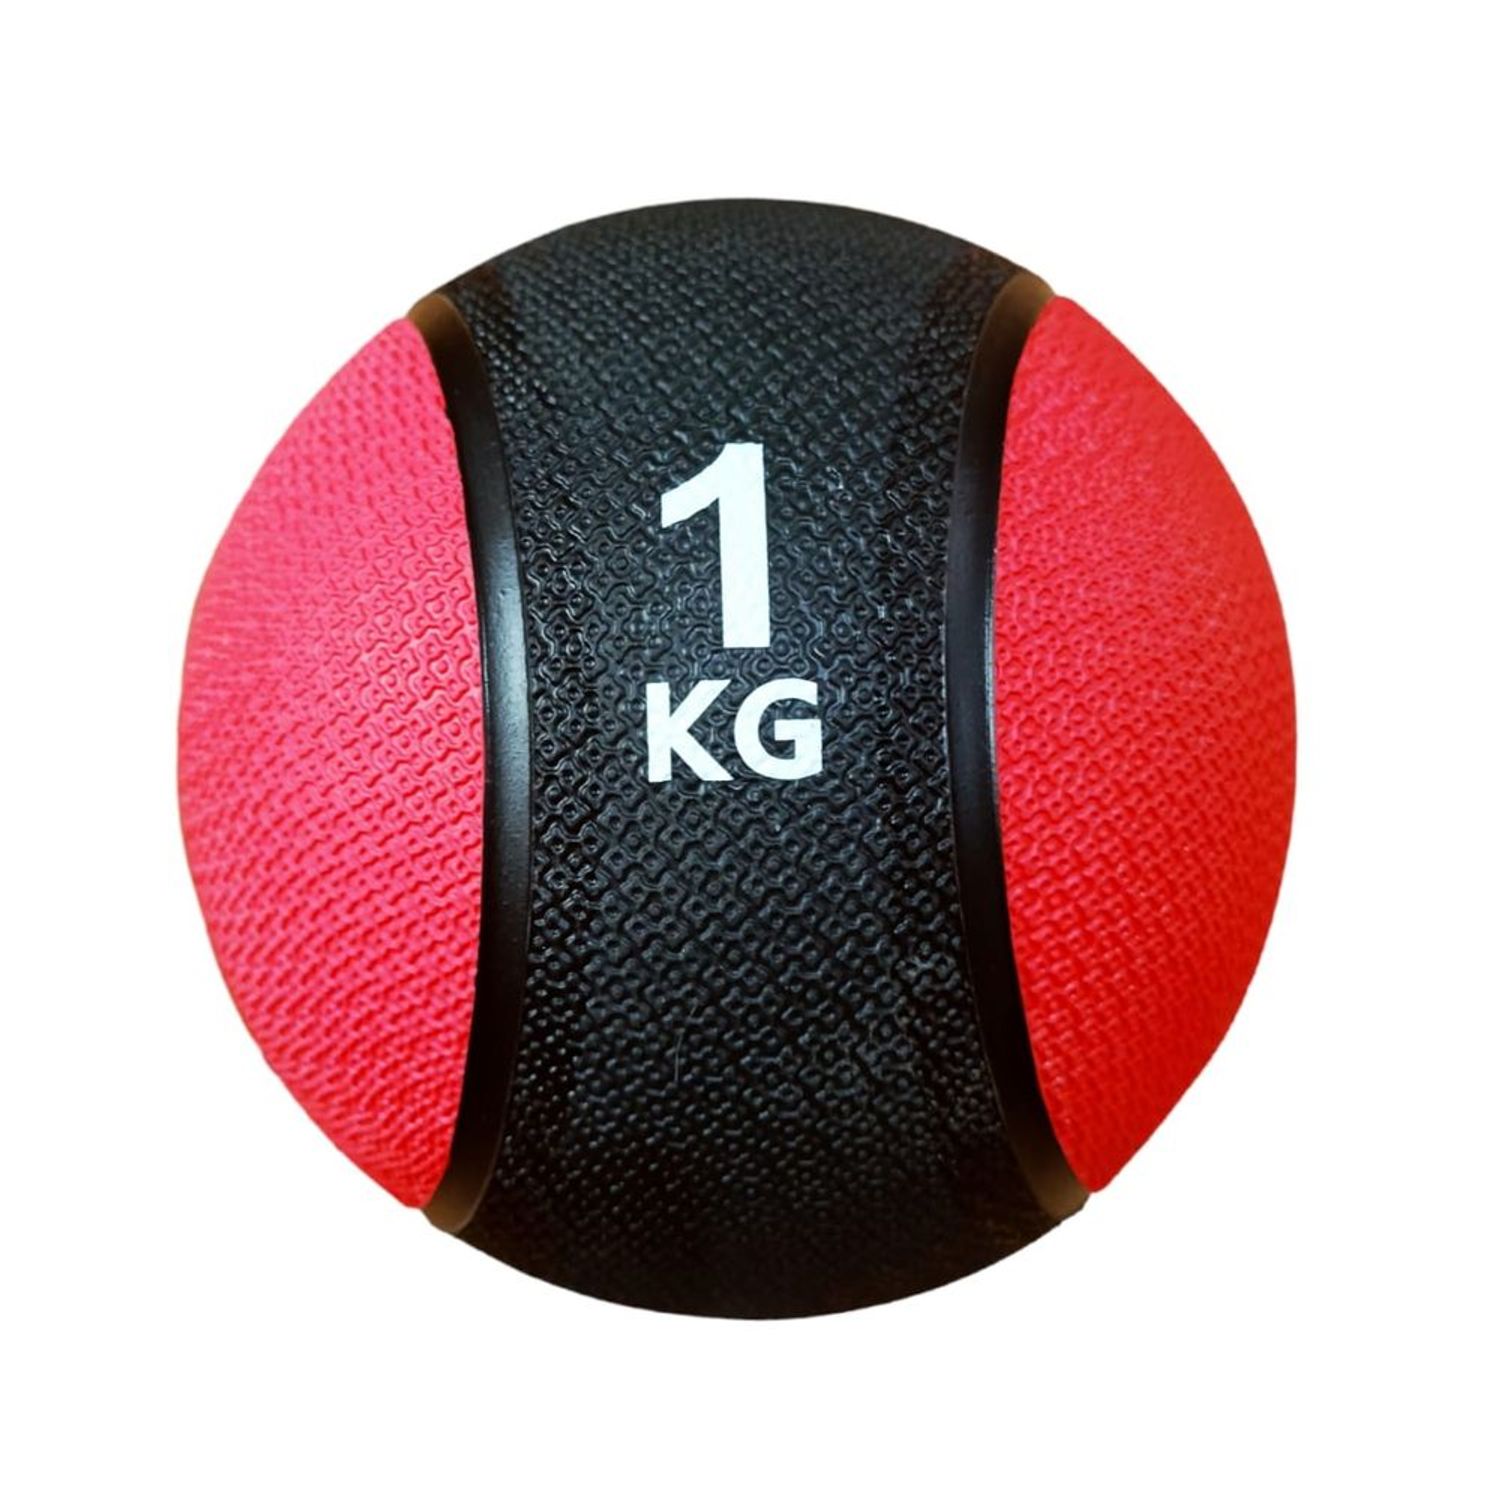 Pelota o Balón Medicinal con Rebote Funcional 5 Kg I Oechsle